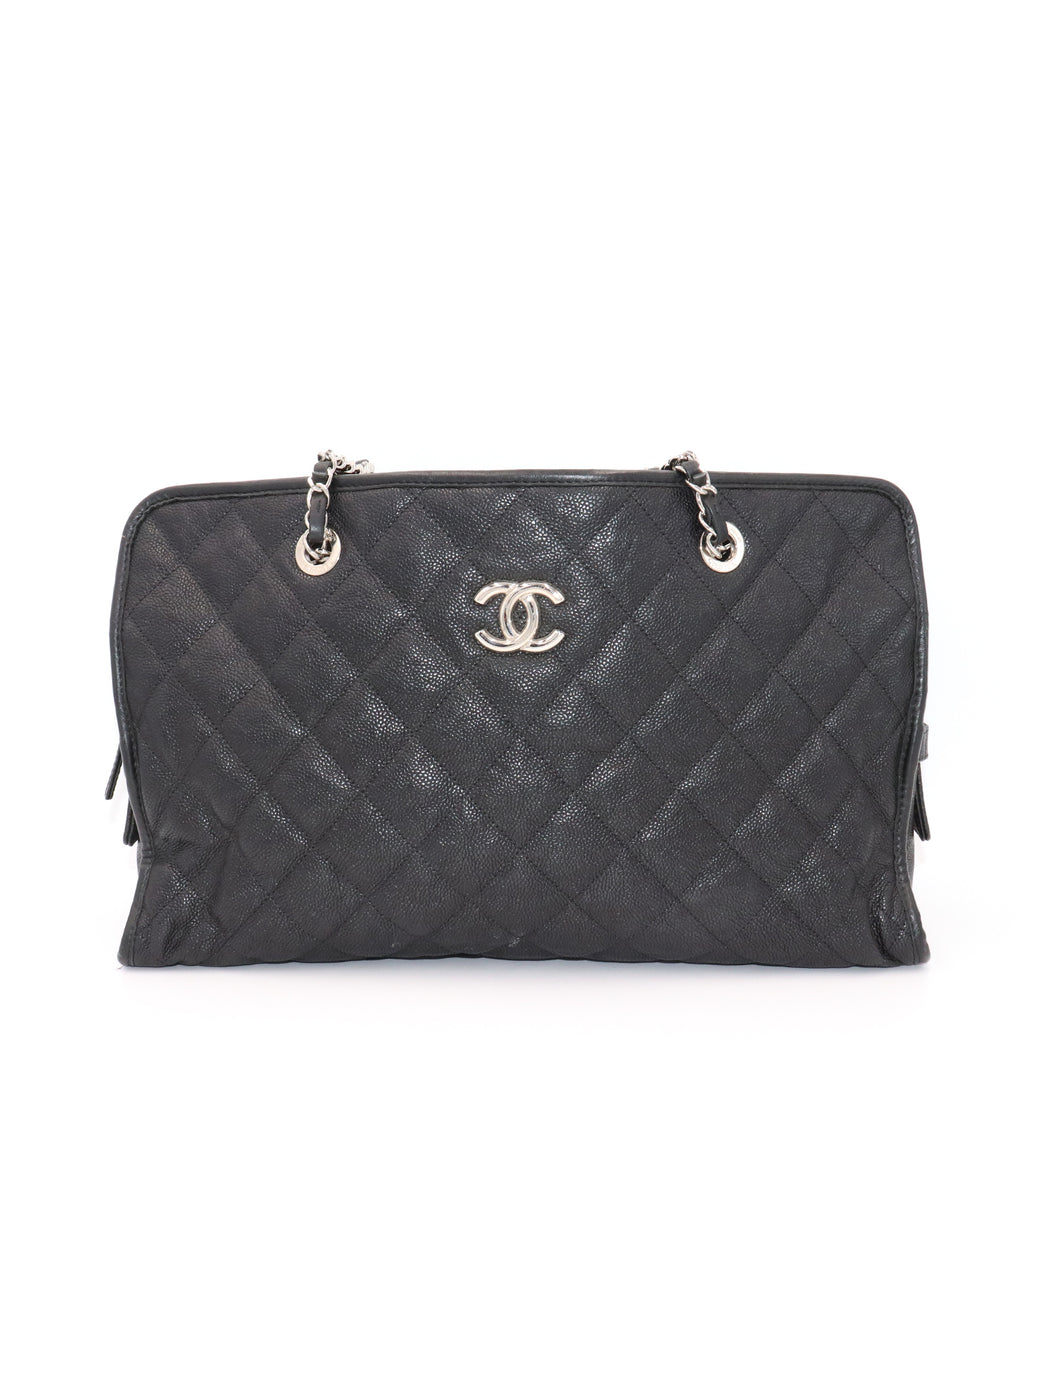 Chanel Caviar Tote Bag - 127 For Sale on 1stDibs  chanel caviar leather  tote bag, chanel black caviar tote, chanel cc tote bag